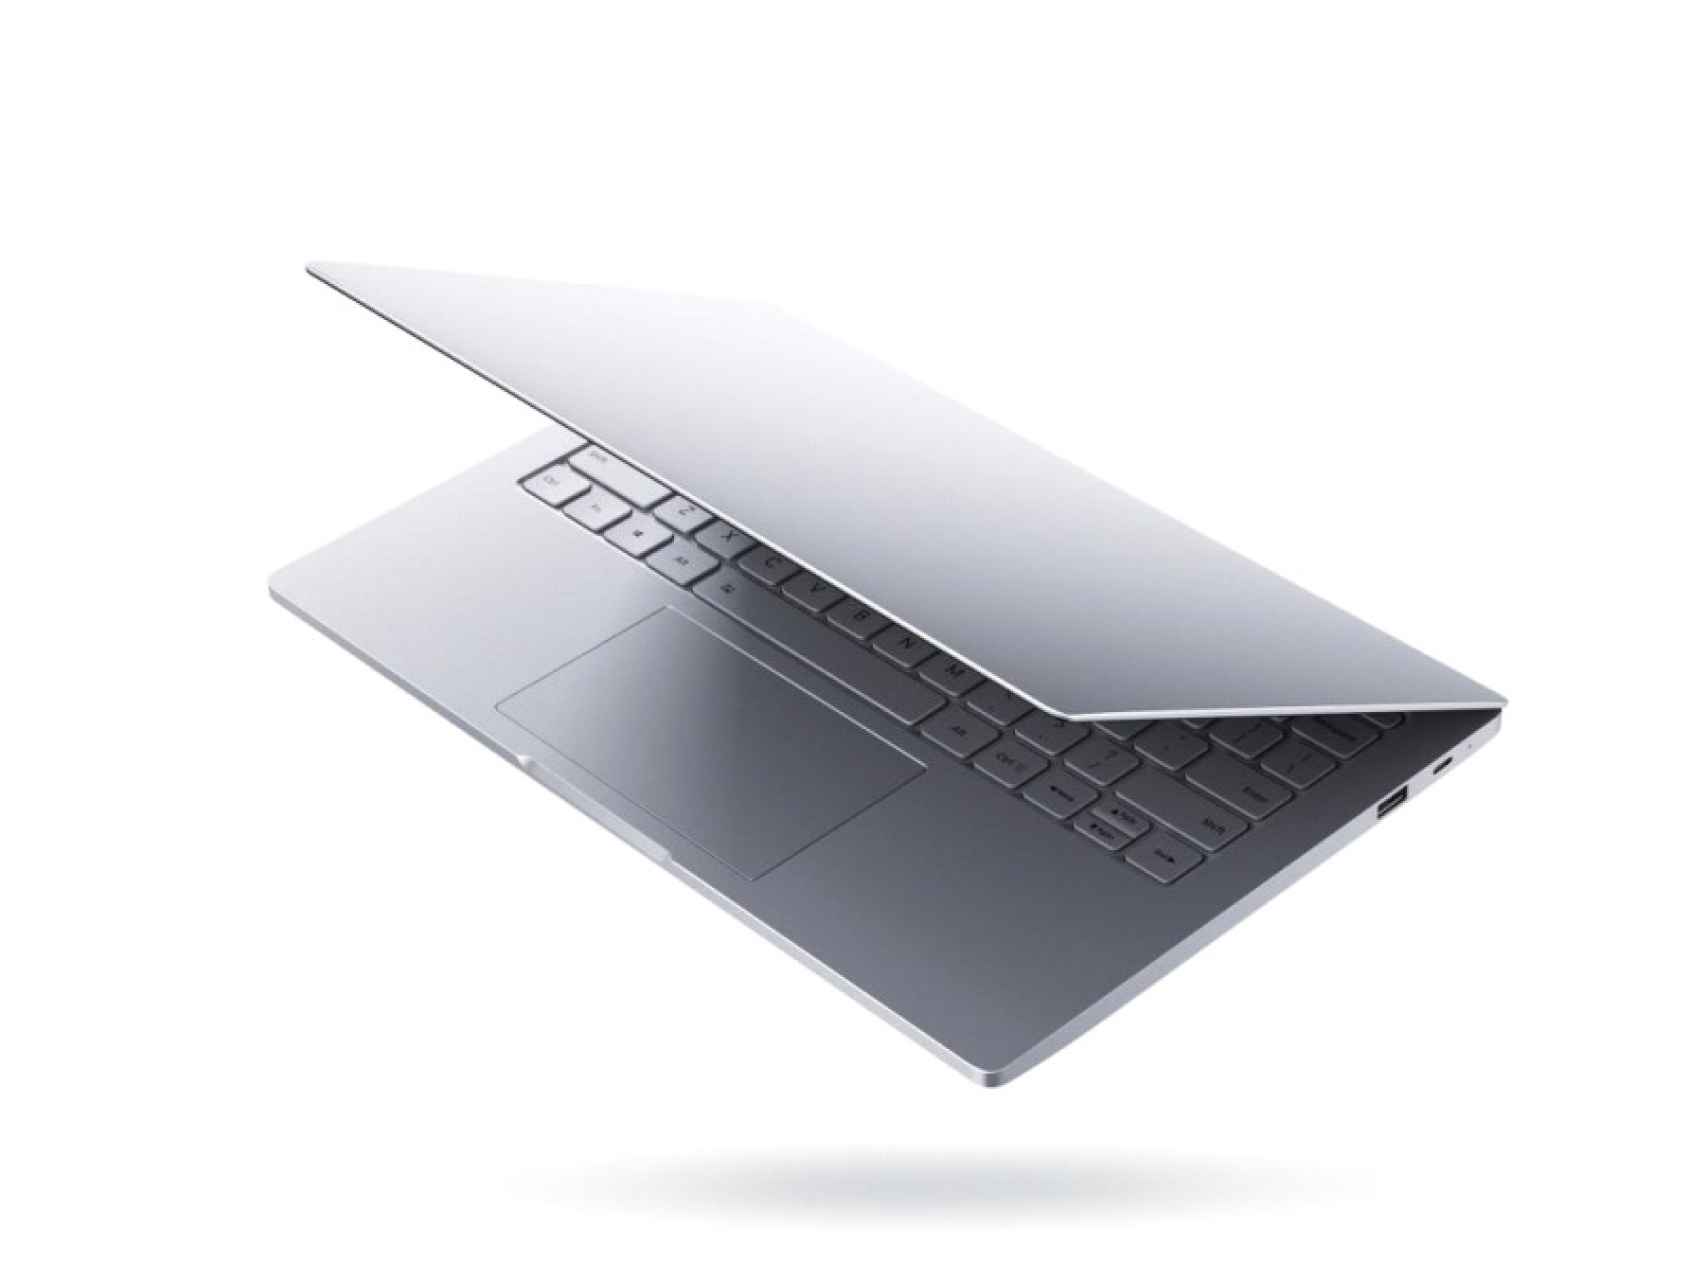 Modelo de Mi Notebook Air, el nuevo ordenador de Xiaomi